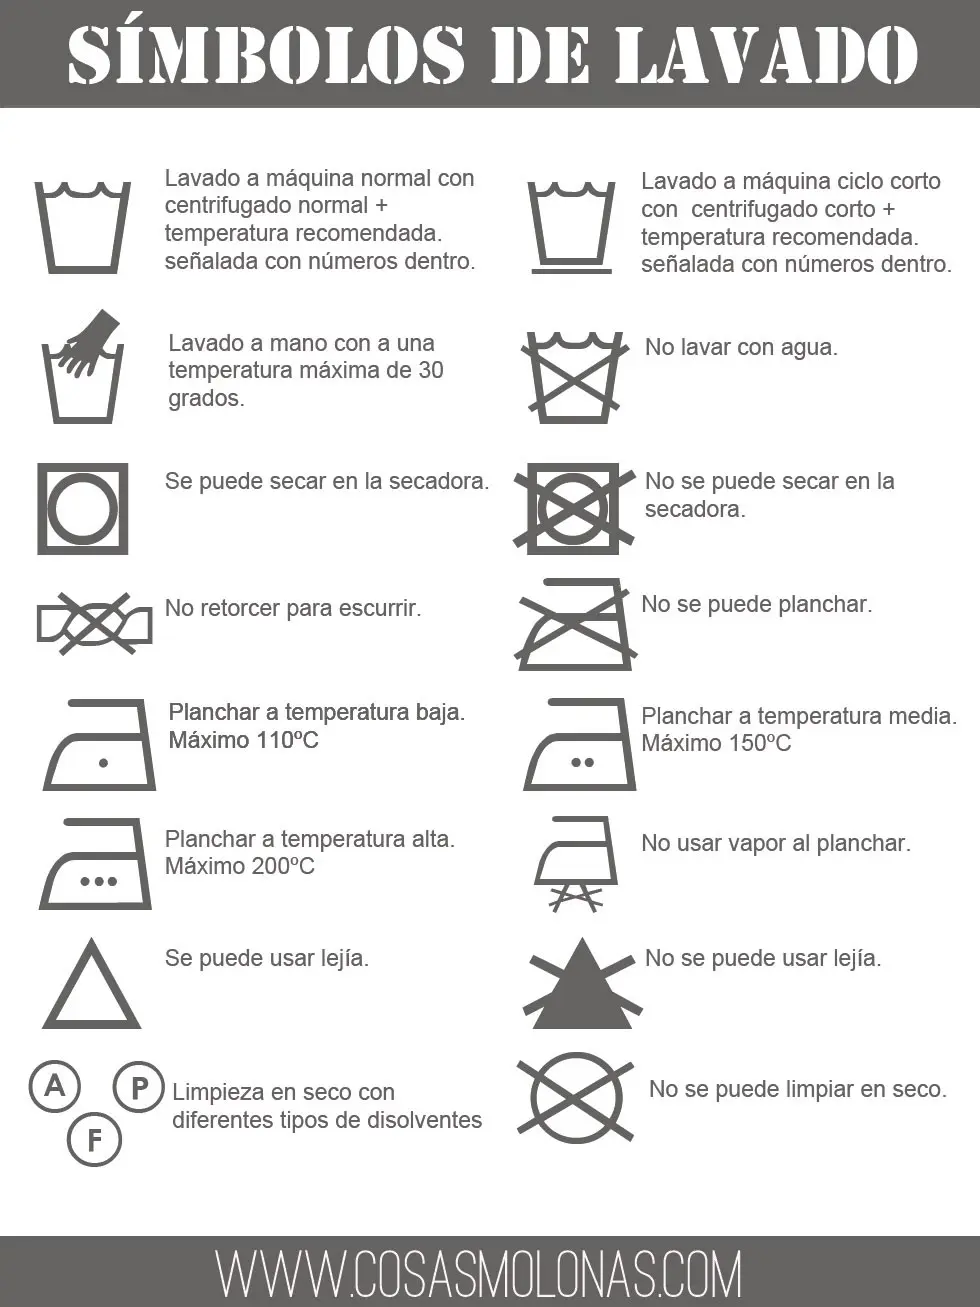 signos de lavado y secado de ropa - Cuál es el símbolo de secado